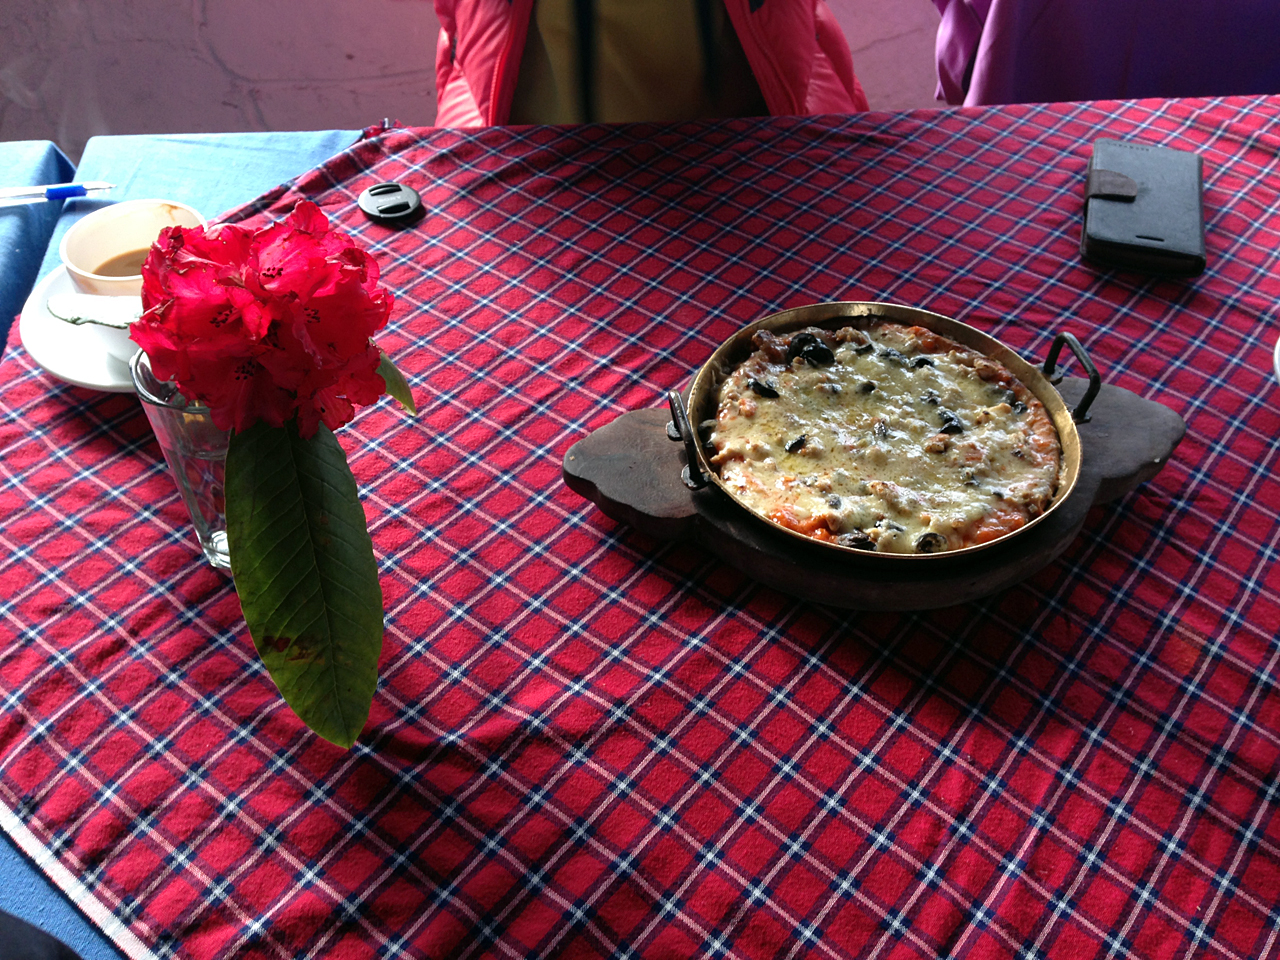  네팔 히말라야 트레킹 중 고레파니 로지에서 먹은 피자. 로지마다 피자도 그 모양새가 다르다. 